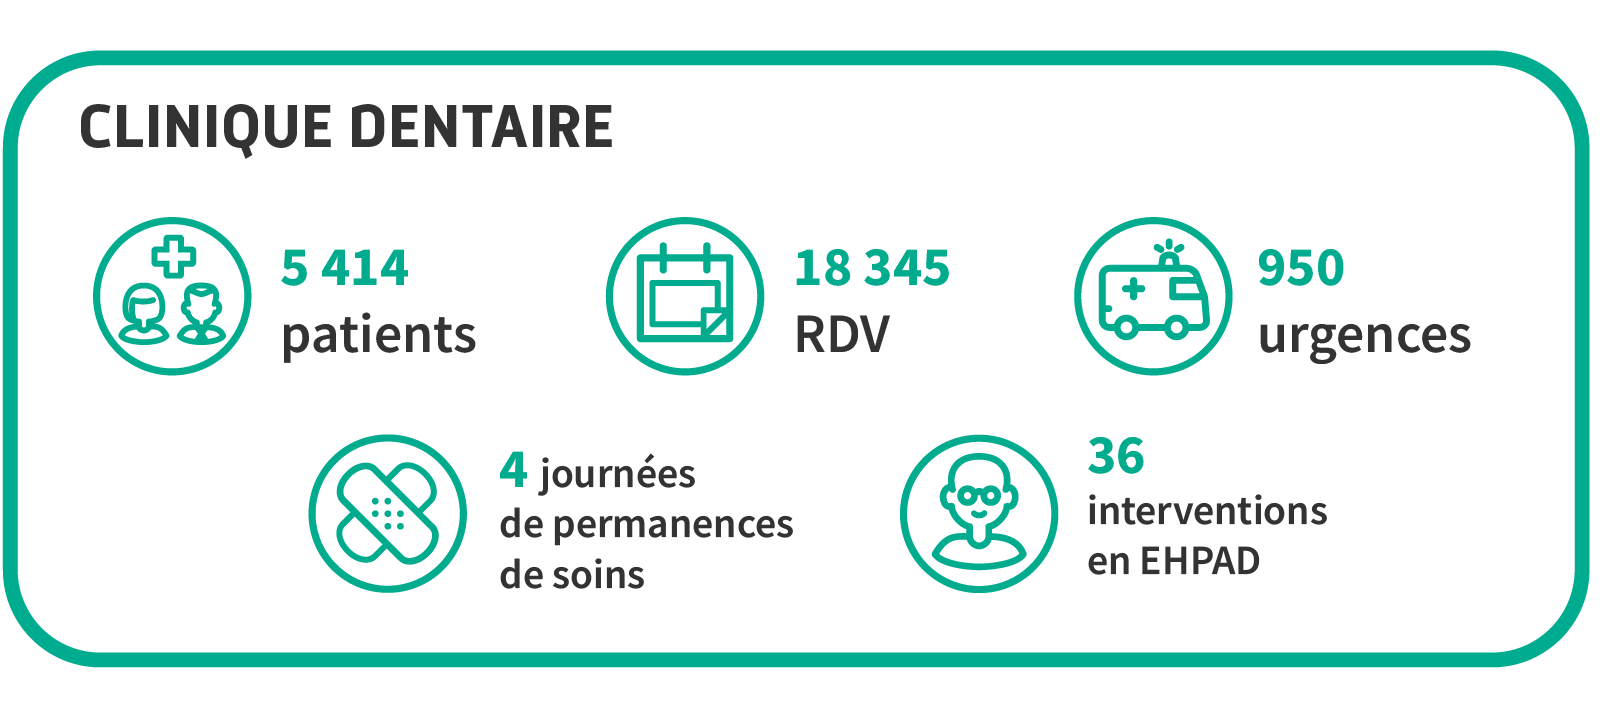 5414 patients, 18 345 rendez-vous, 950 urgences, 36 interventions en EHPAD, 4 journées de permanence des soins